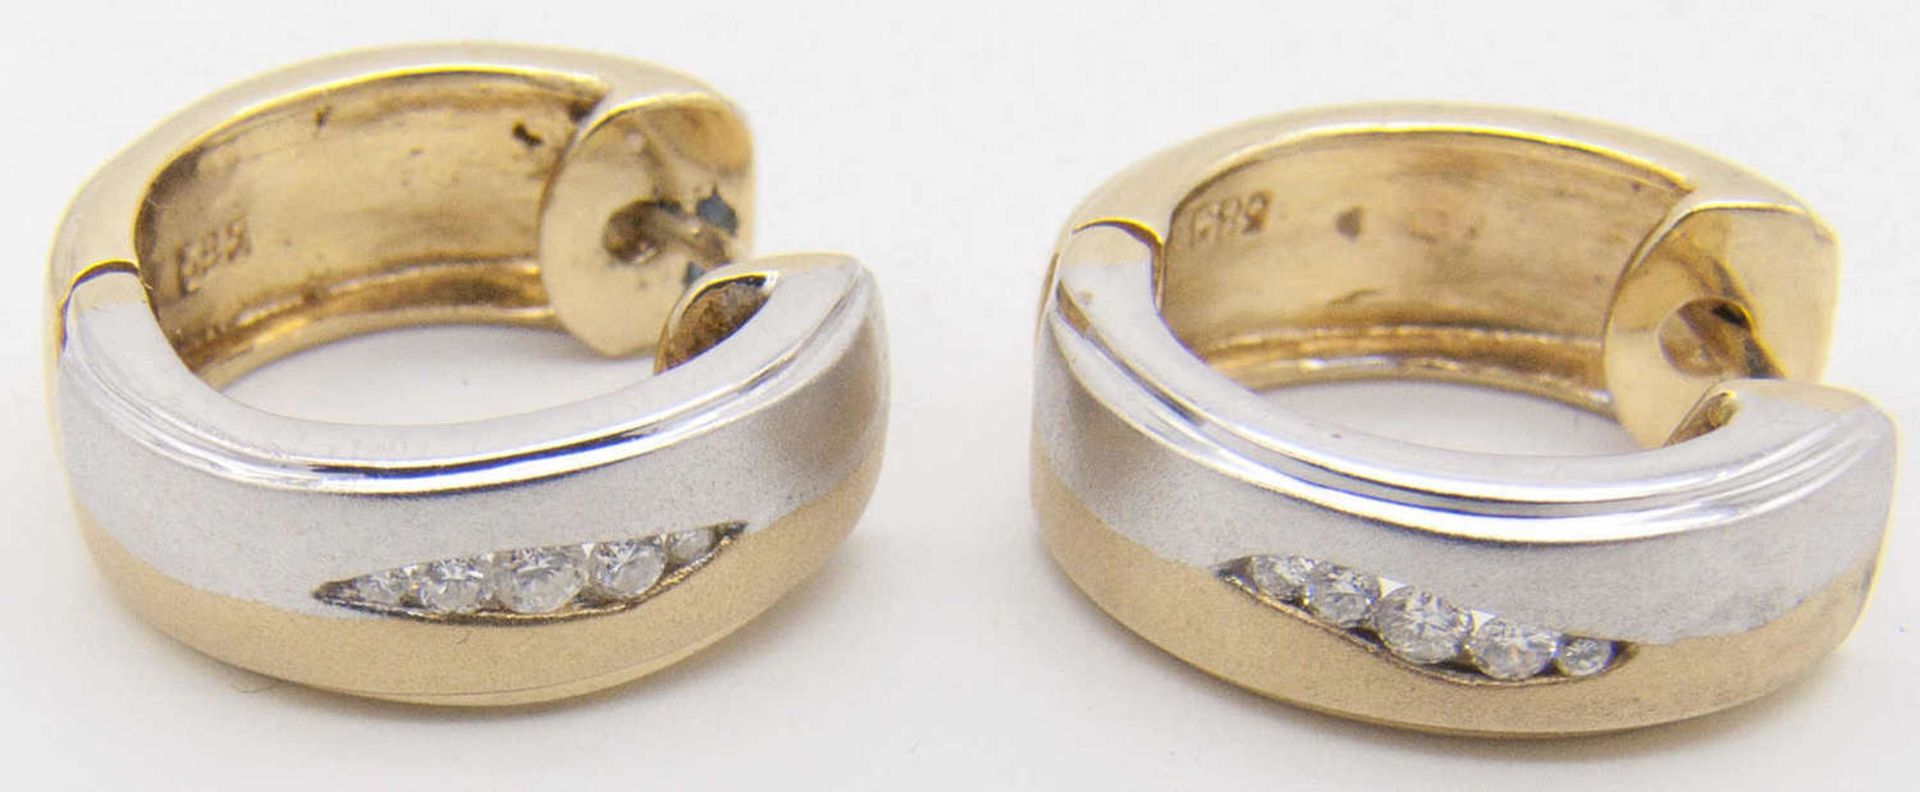 Gold - Ohrringe, Gold 585, bicolor. Besetzt mit Brillant - Splittern. Gewicht: ca. 7,9 g.Gold